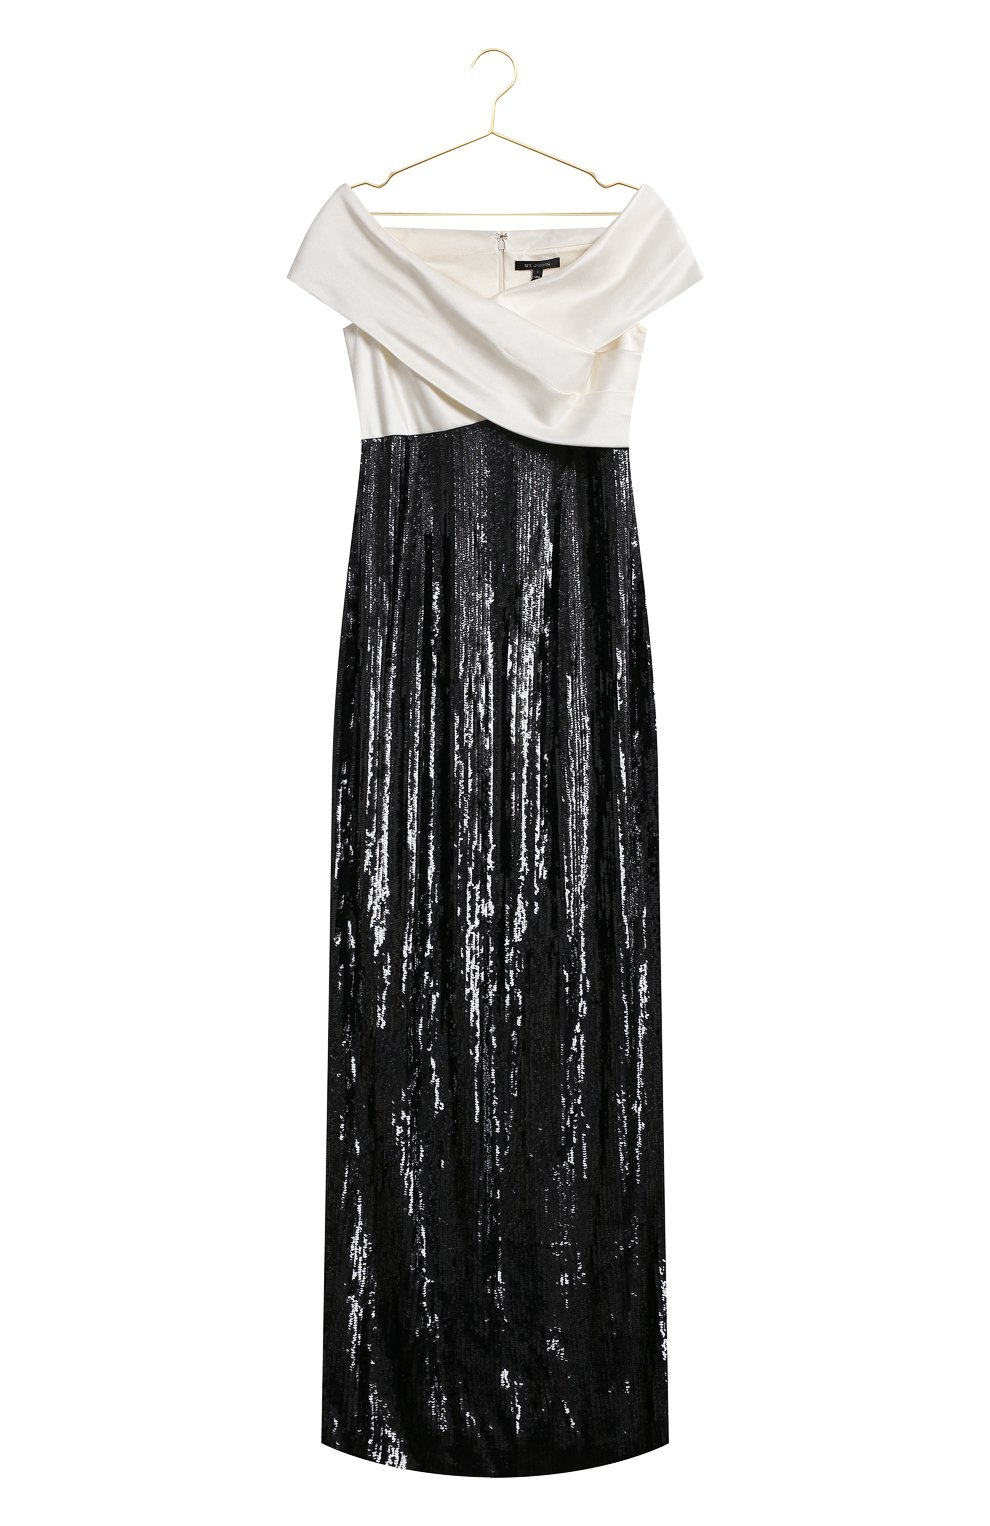 Платье с пайетками | St. John | Чёрно-белый - 1